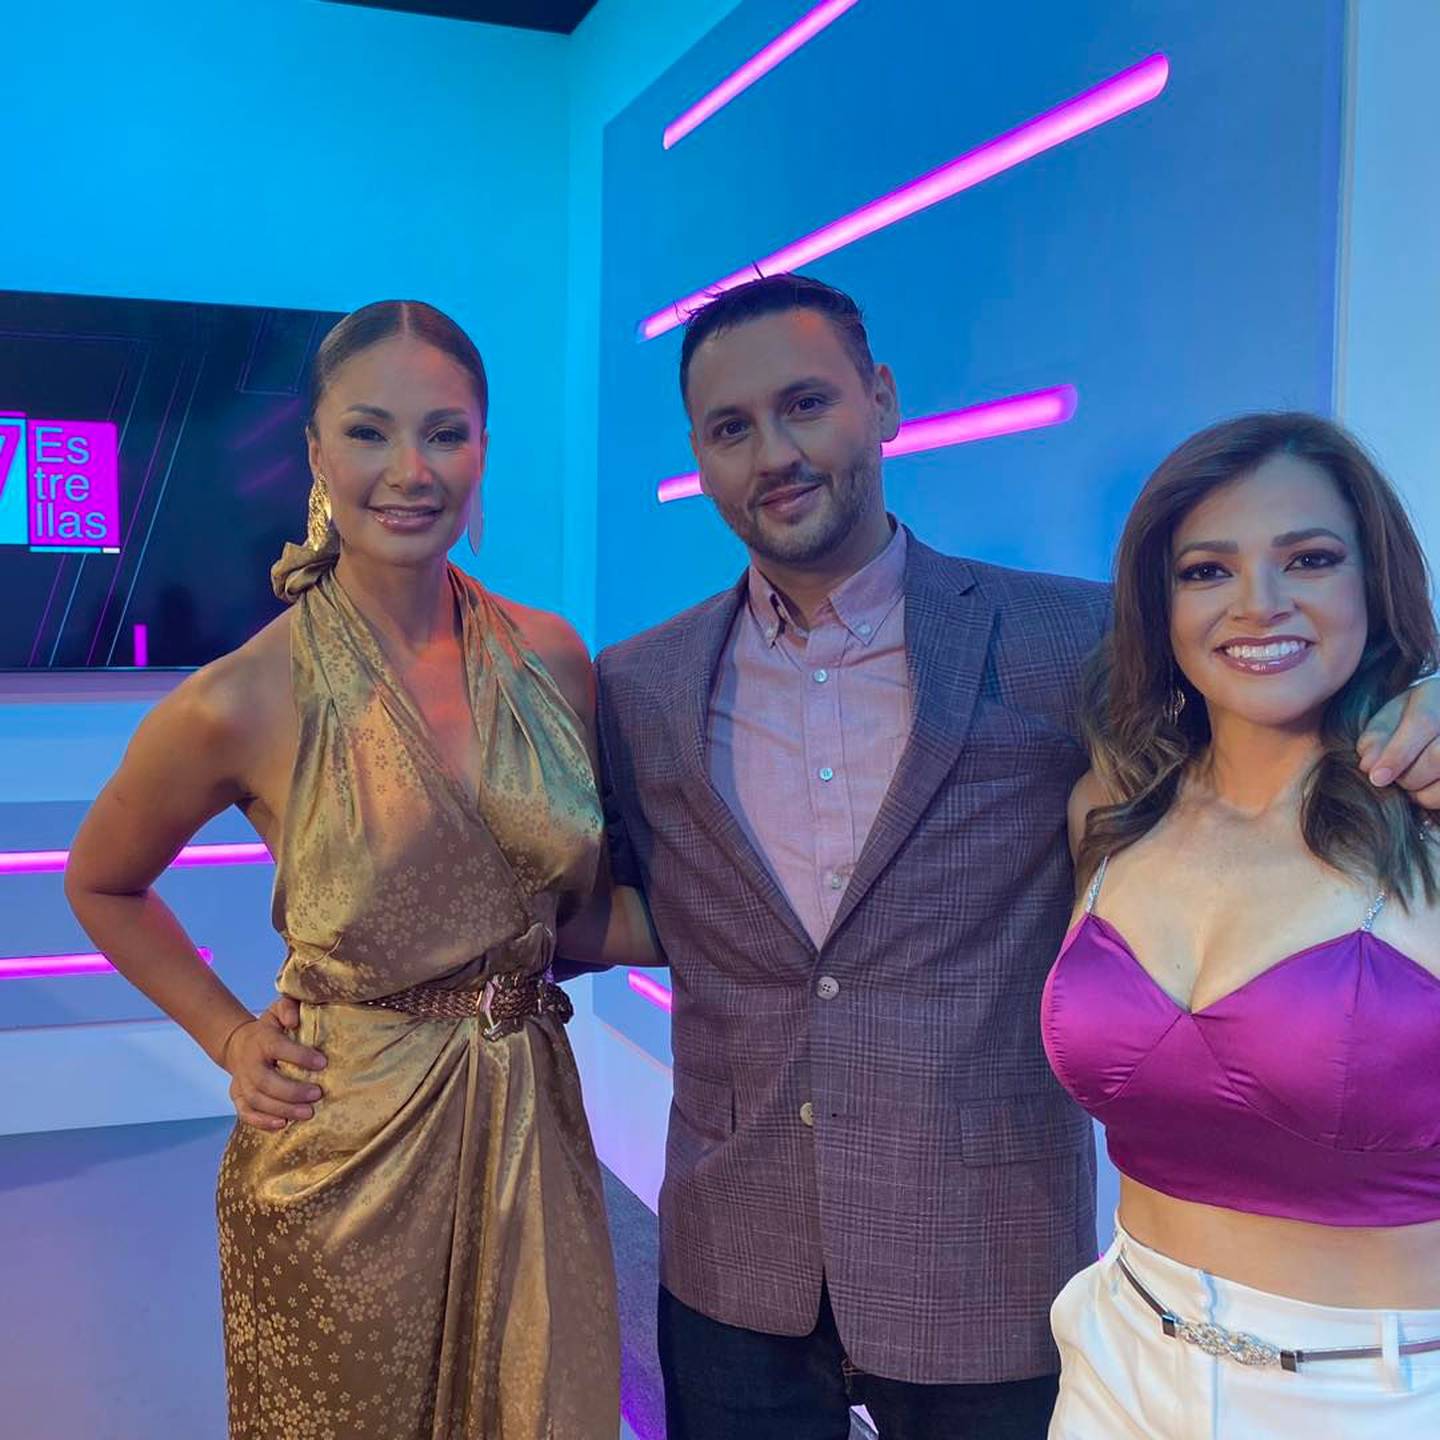 Programa 7 Estrellas, presentadores Marilin Gamboa, Wálter Campos y Gabriela Jiménez. Instagram